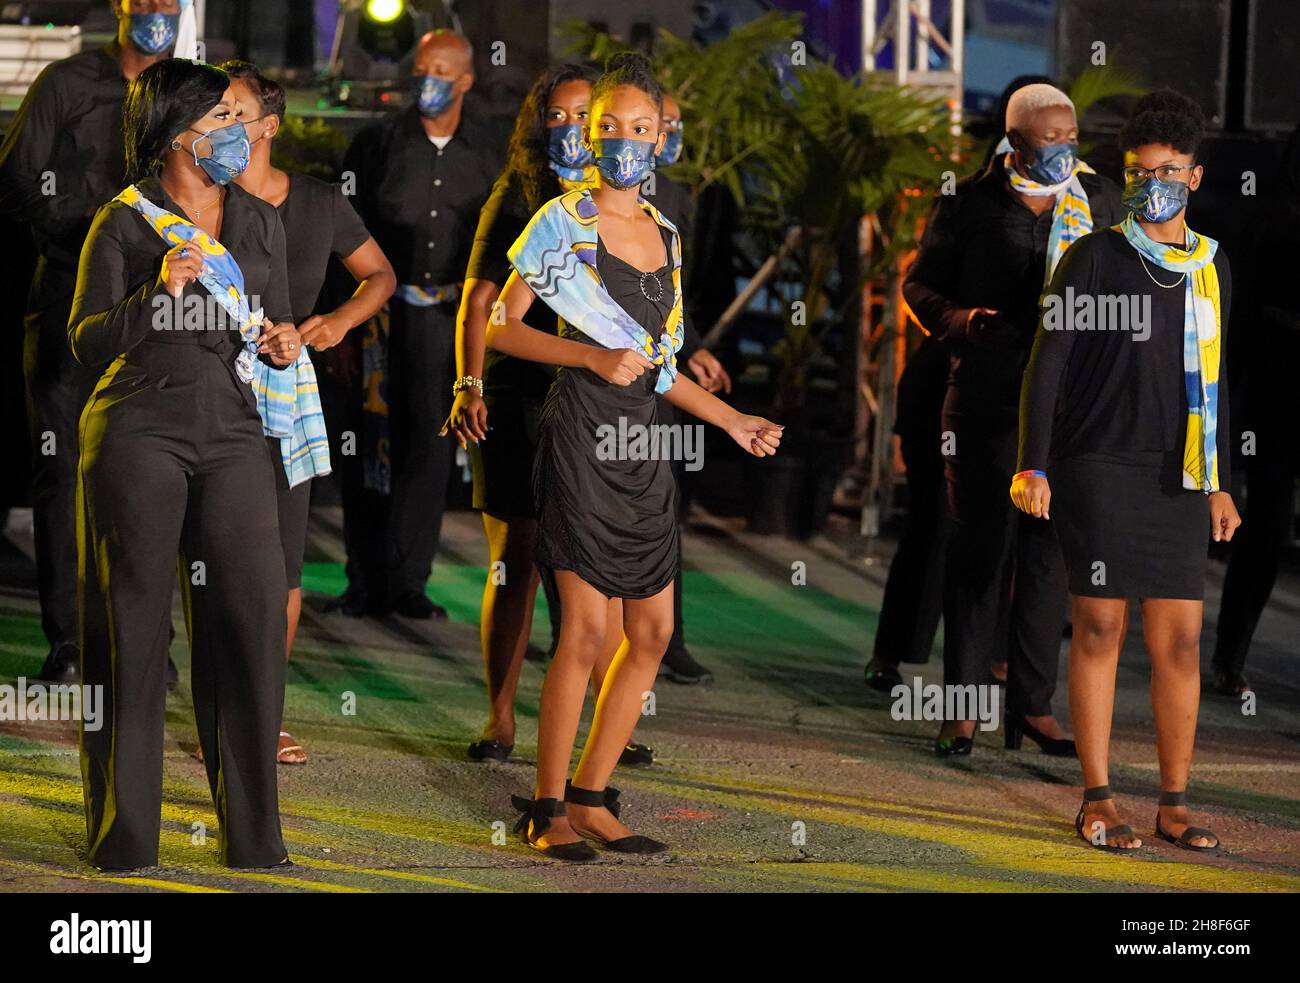 Tänzer treten auf dem Heroes Square in Bridgetown, Barbados, vor der Zeremonie zur Einweihung des Präsidenten auf, bei der der Standard der Königin um Mitternacht gesenkt wird. Bilddatum: Montag, 29. November 2021. Stockfoto